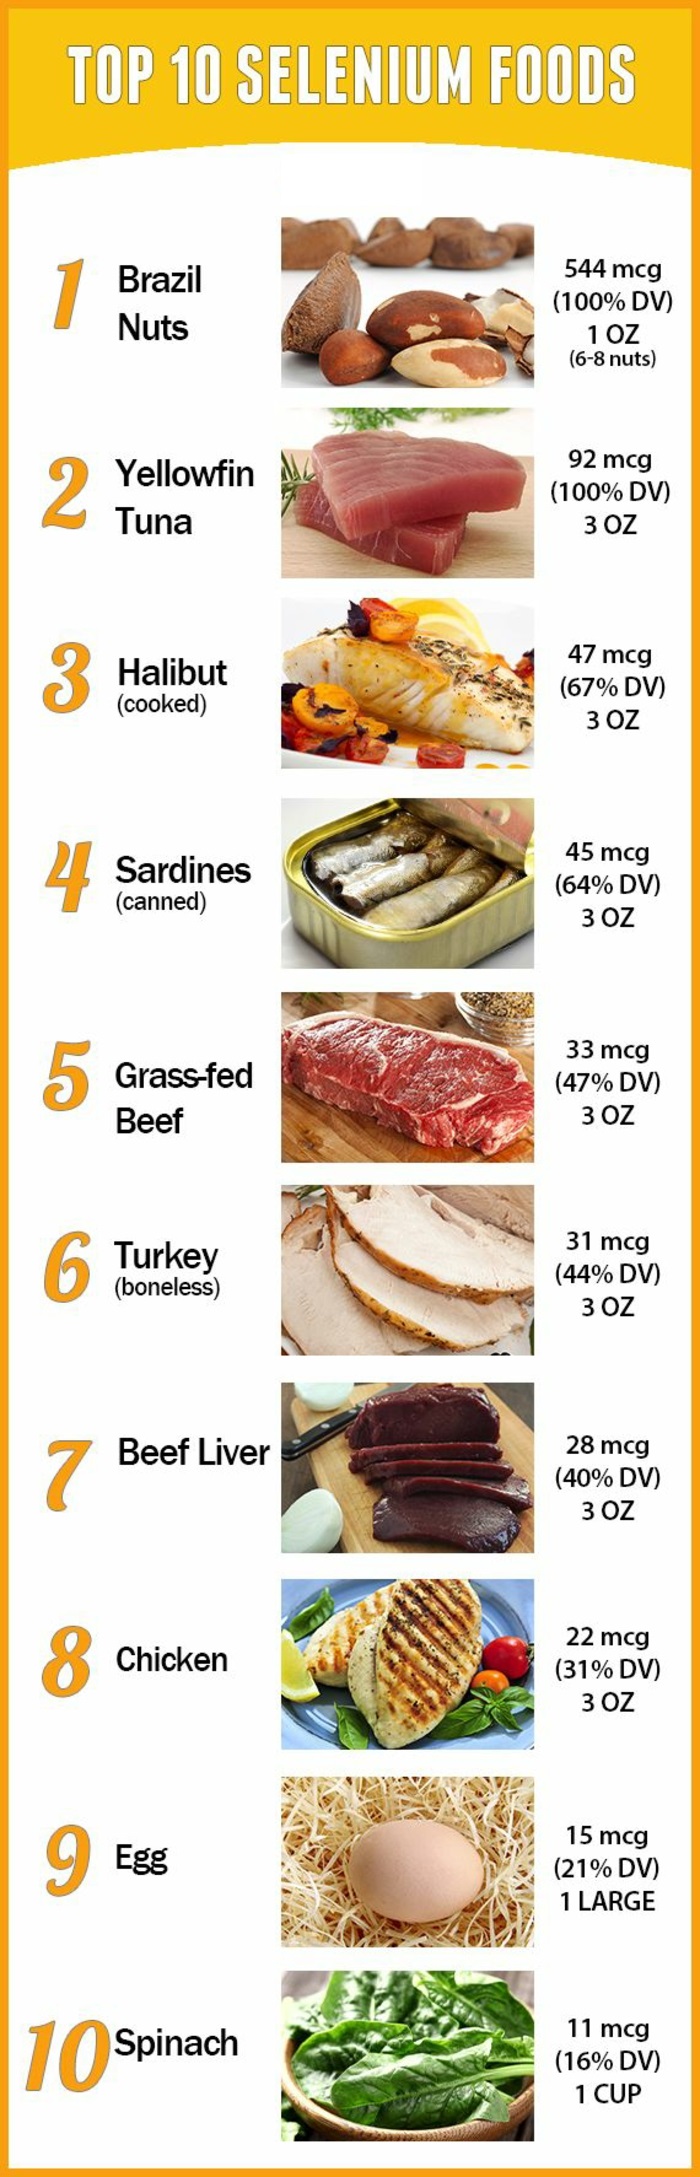 gesundes essen beim selenmangel top 10 liste